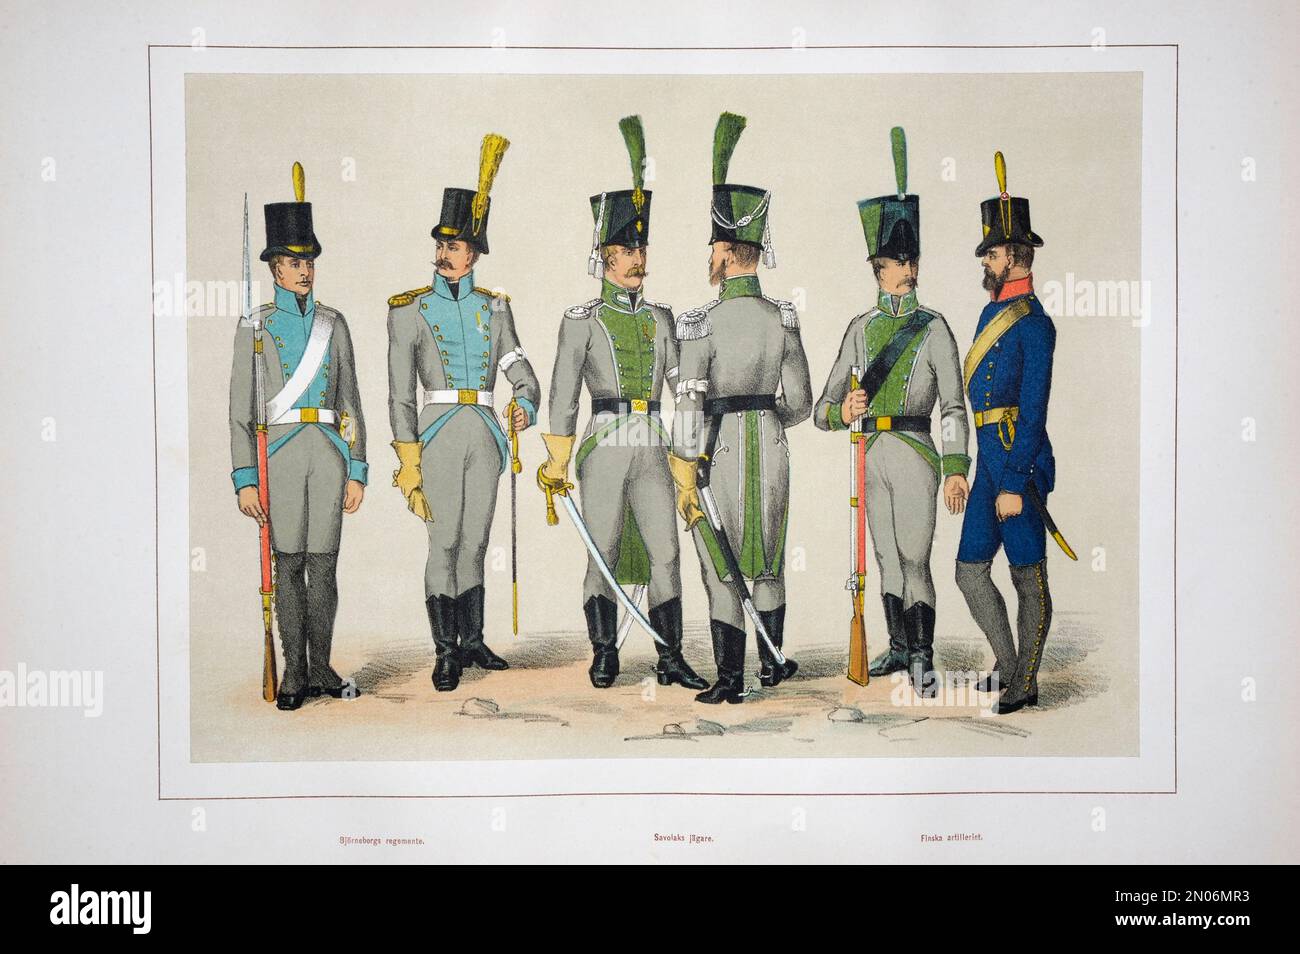 Les unités et uniformes de l'armée finlandaise 1809-1809. A Pori's Regiment, un Bataillon de Savonia's Jäger, une artillerie finlandaise. Le 21 février 1808, troupe russe Banque D'Images